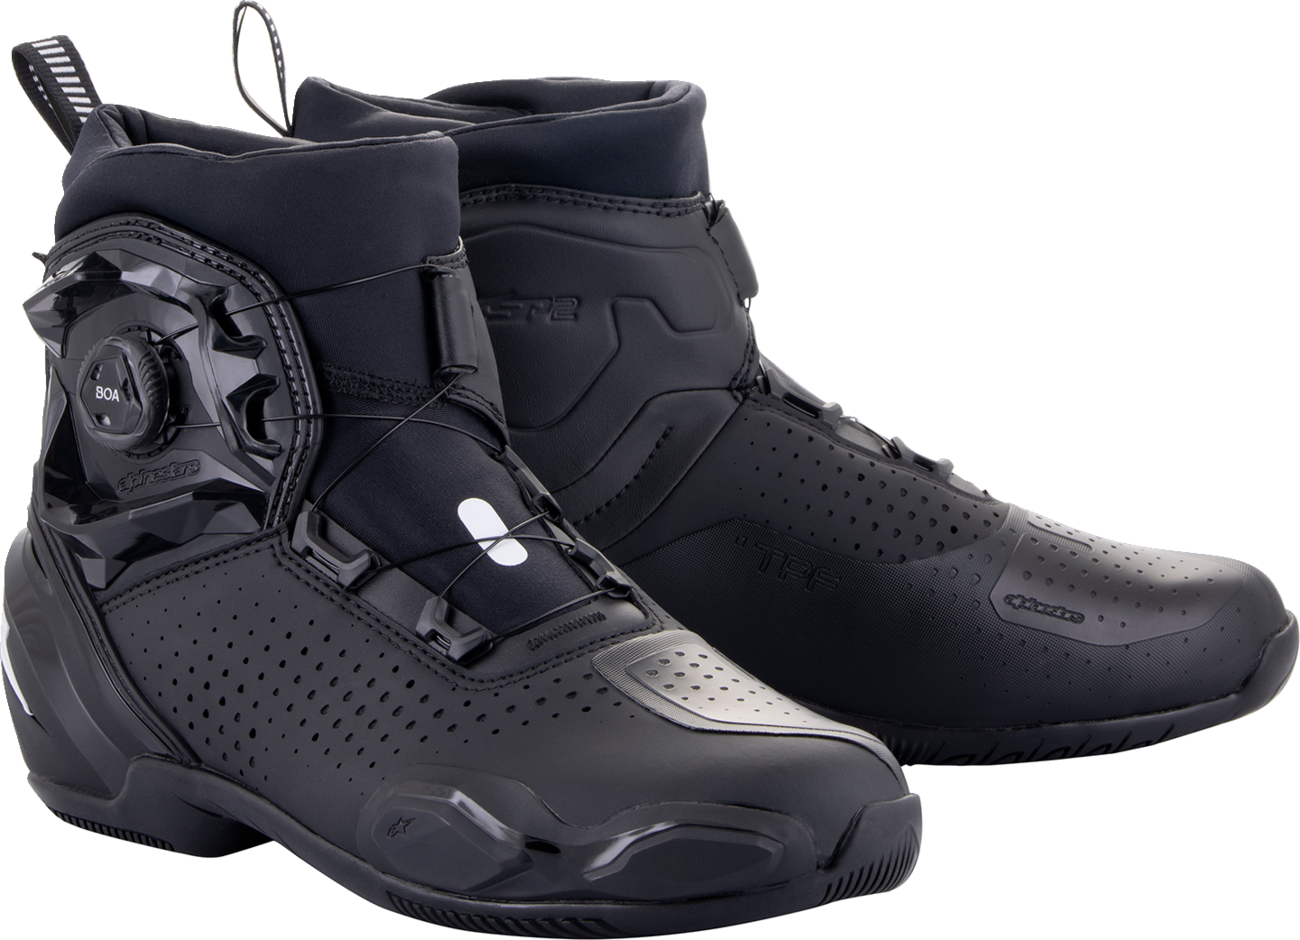 Zapatos ALPINESTARS SP-2 - Negro - US 7.5 / EU 41 2511622-10-41 